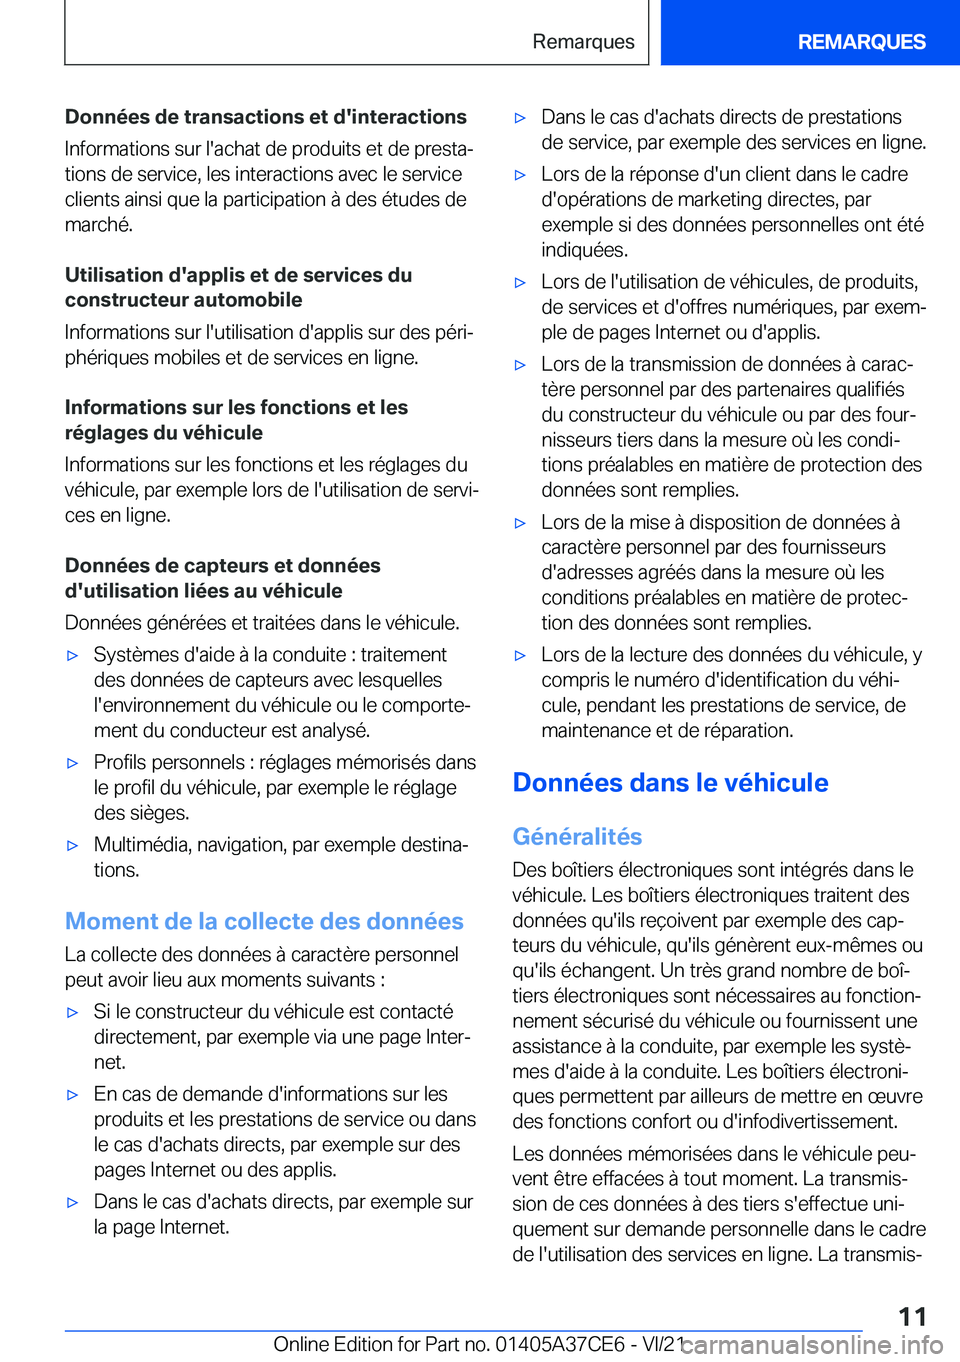 BMW X5 2022  Notices Demploi (in French) �D�o�n�n�é�e�s��d�e��t�r�a�n�s�a�c�t�i�o�n�s��e�t��d�'�i�n�t�e�r�a�c�t�i�o�n�s�I�n�f�o�r�m�a�t�i�o�n�s��s�u�r��l�'�a�c�h�a�t��d�e��p�r�o�d�u�i�t�s��e�t��d�e��p�r�e�s�t�aj
�t�i�o�n